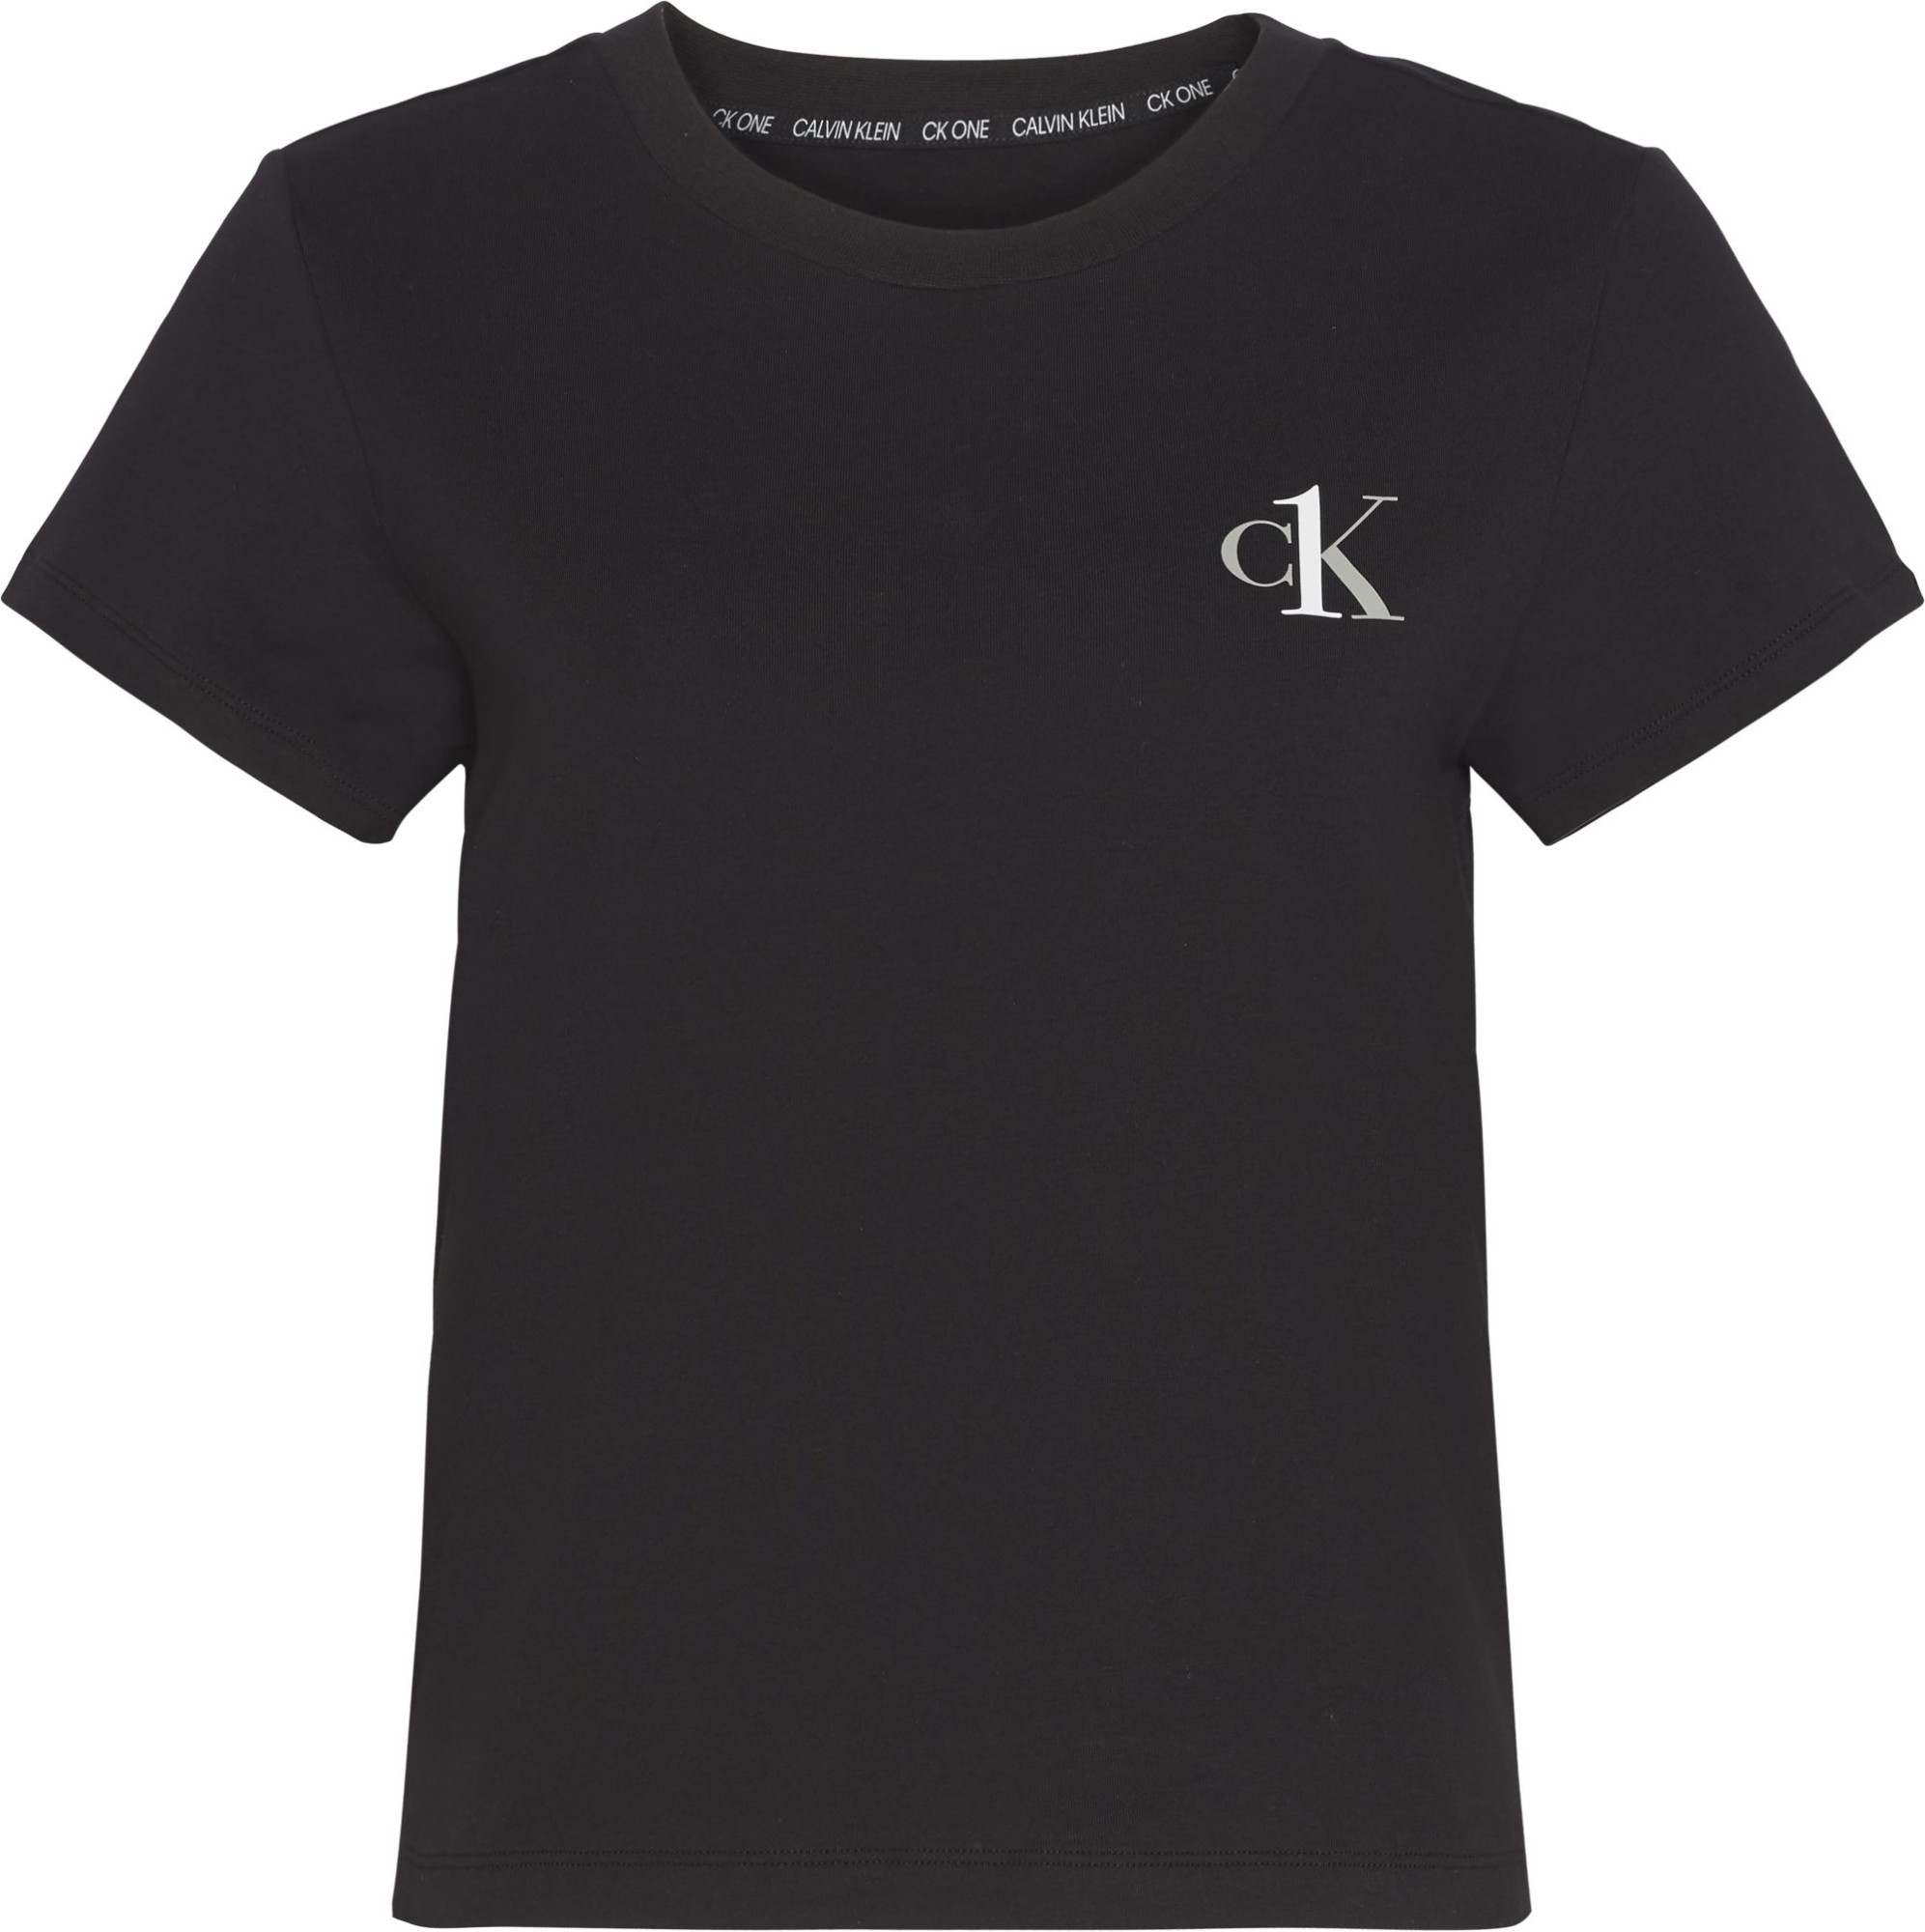 Spodní prádlo Dámská trička S/S CREW NECK 000QS6356E001 - Calvin Klein XS